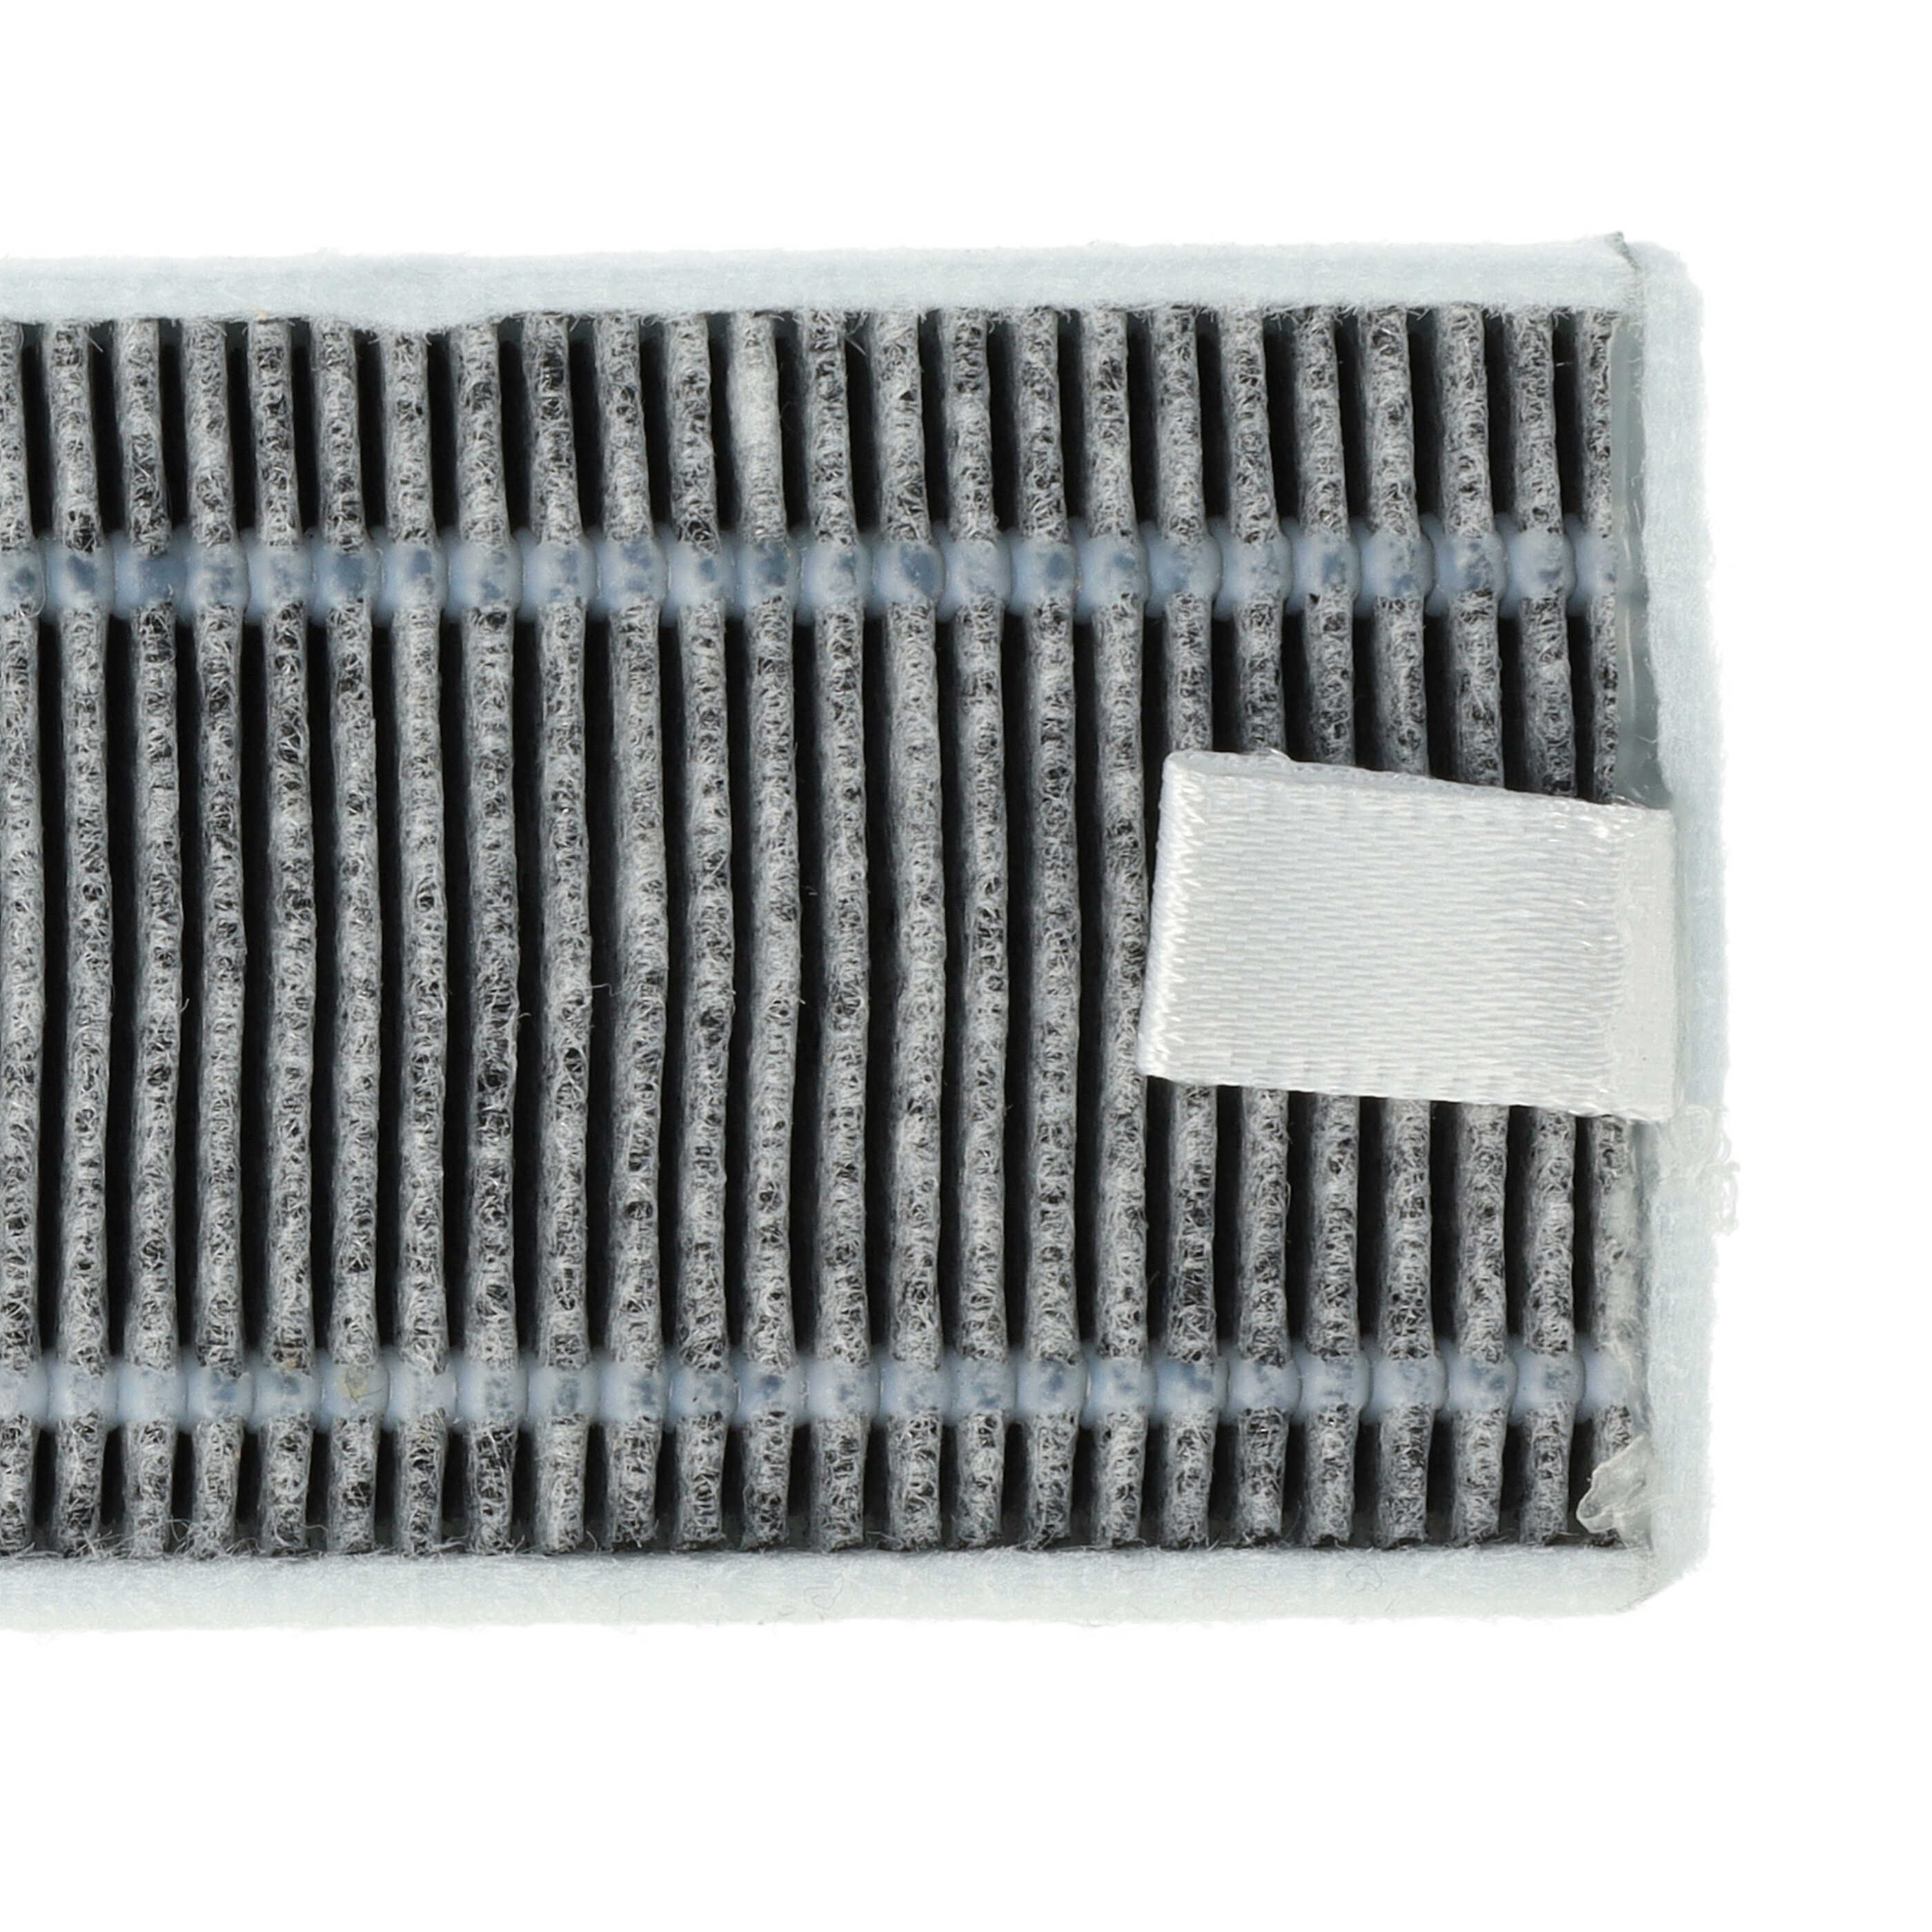 5x Filtro carboni attivi per aspirapolvere robot Proscenic, Cecotec, Xiaomi M7 - 13 x 4 x 1 cm